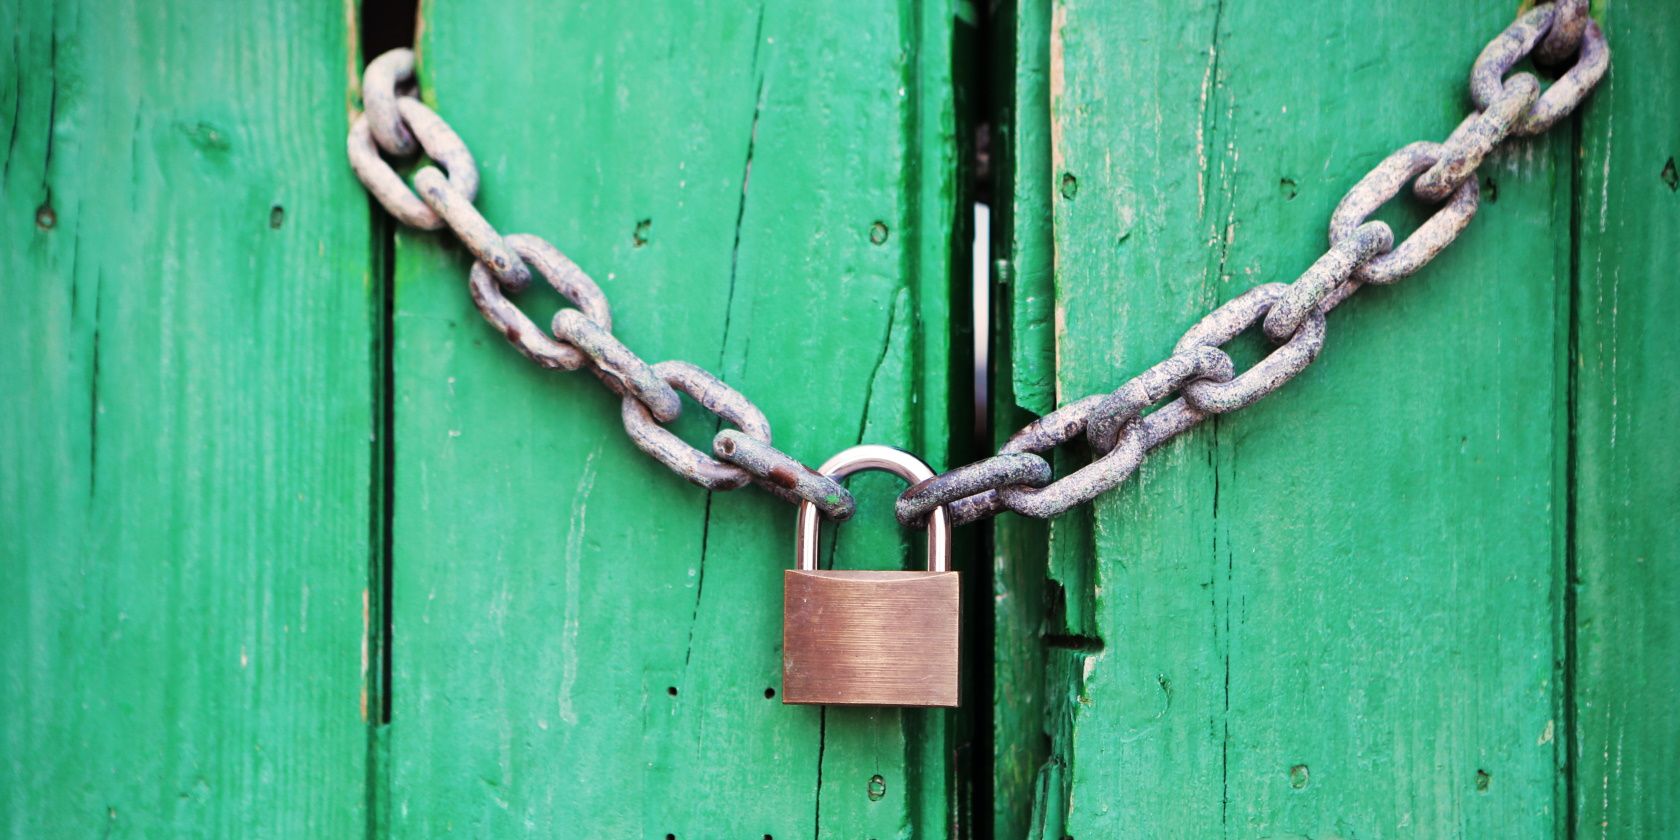 padlock with chain on green door